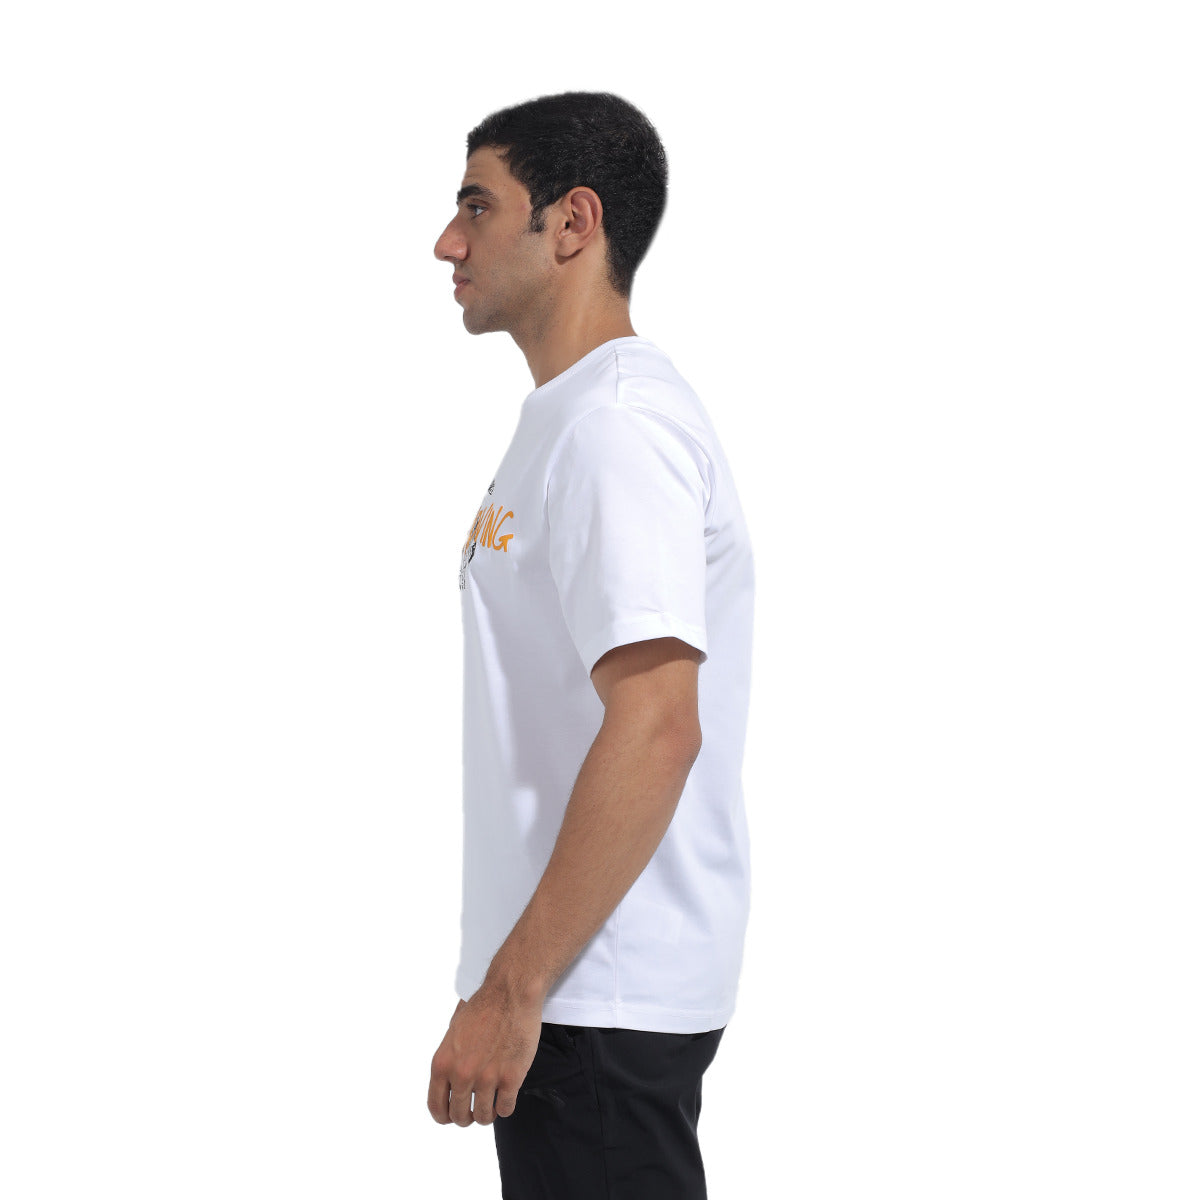 Anta Lifestyle T-Shirt For Men, White